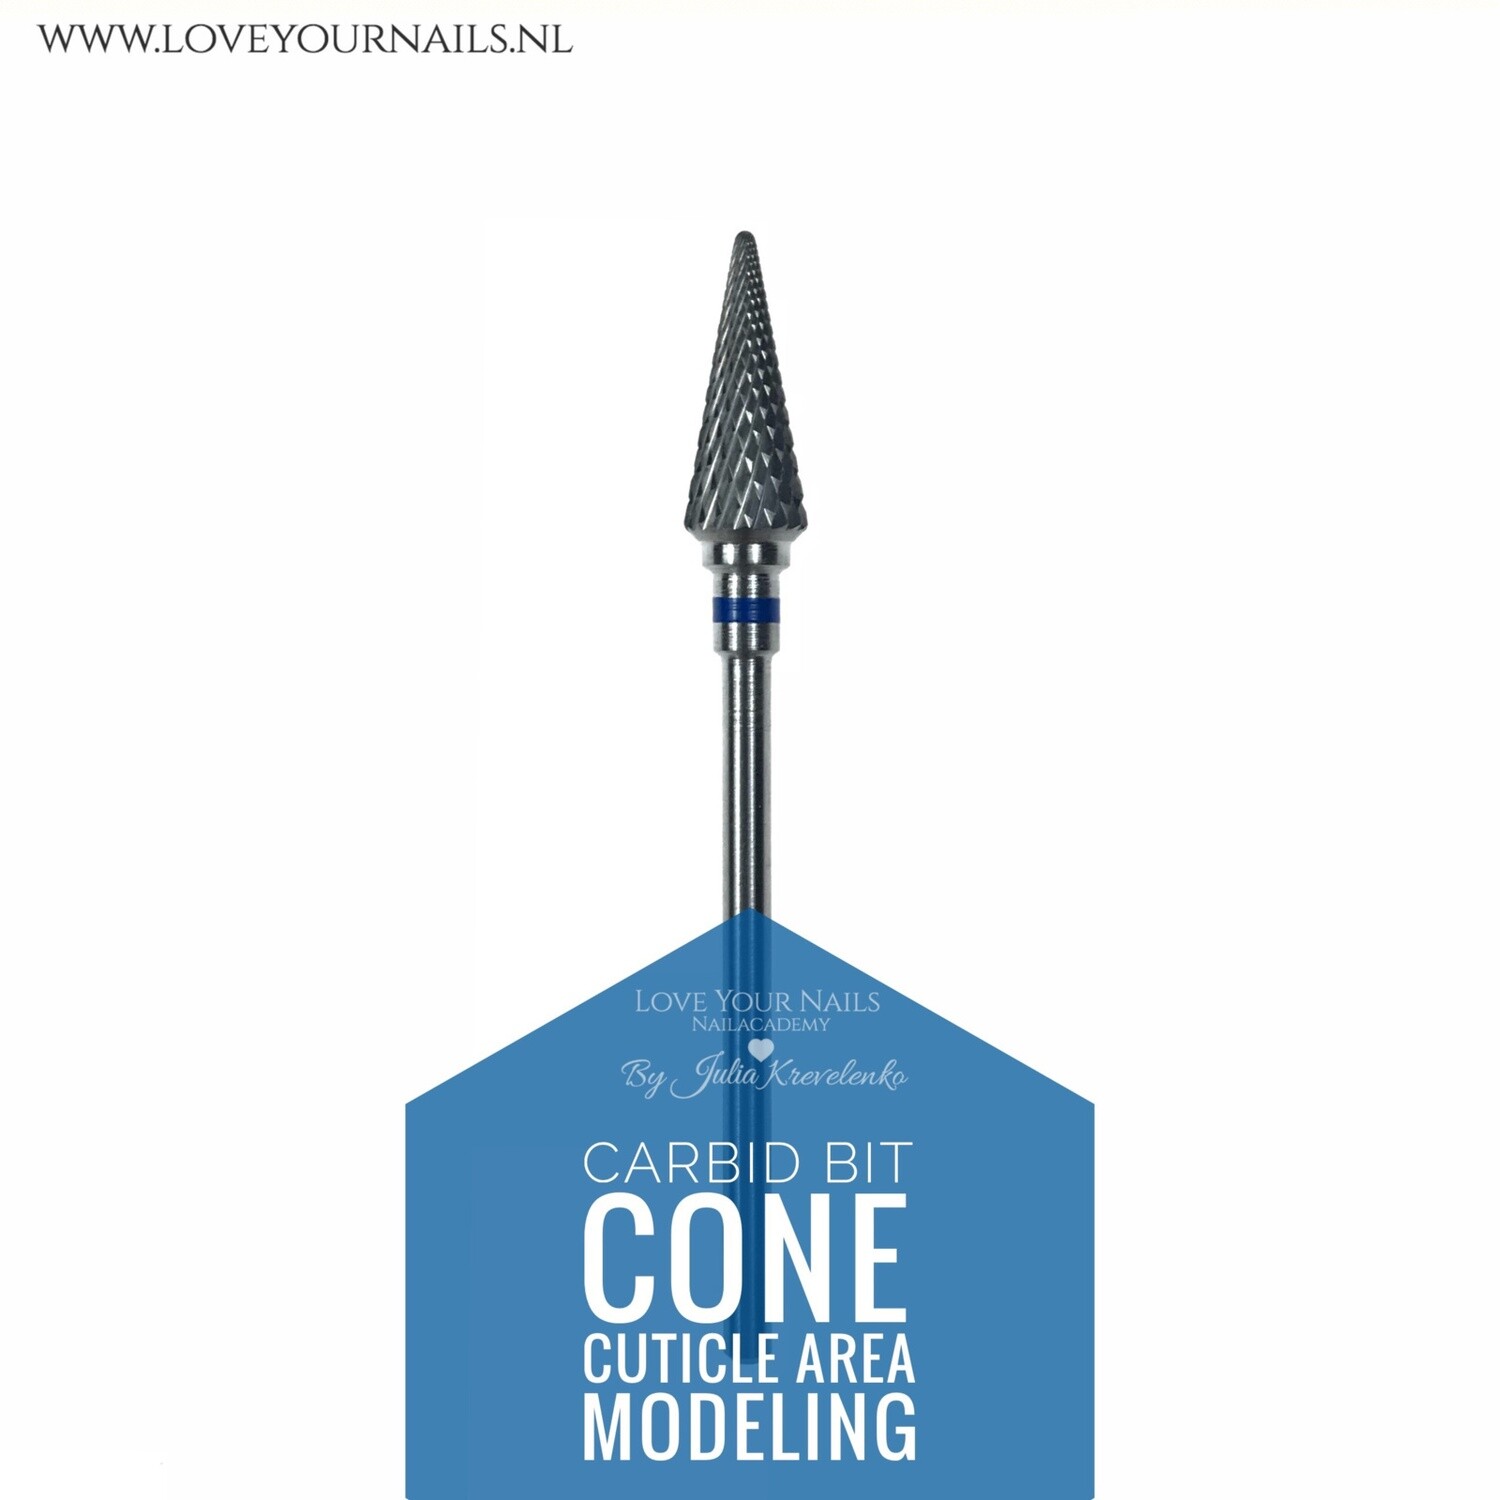 Carbid cone for c-curve and cuticle area - medium